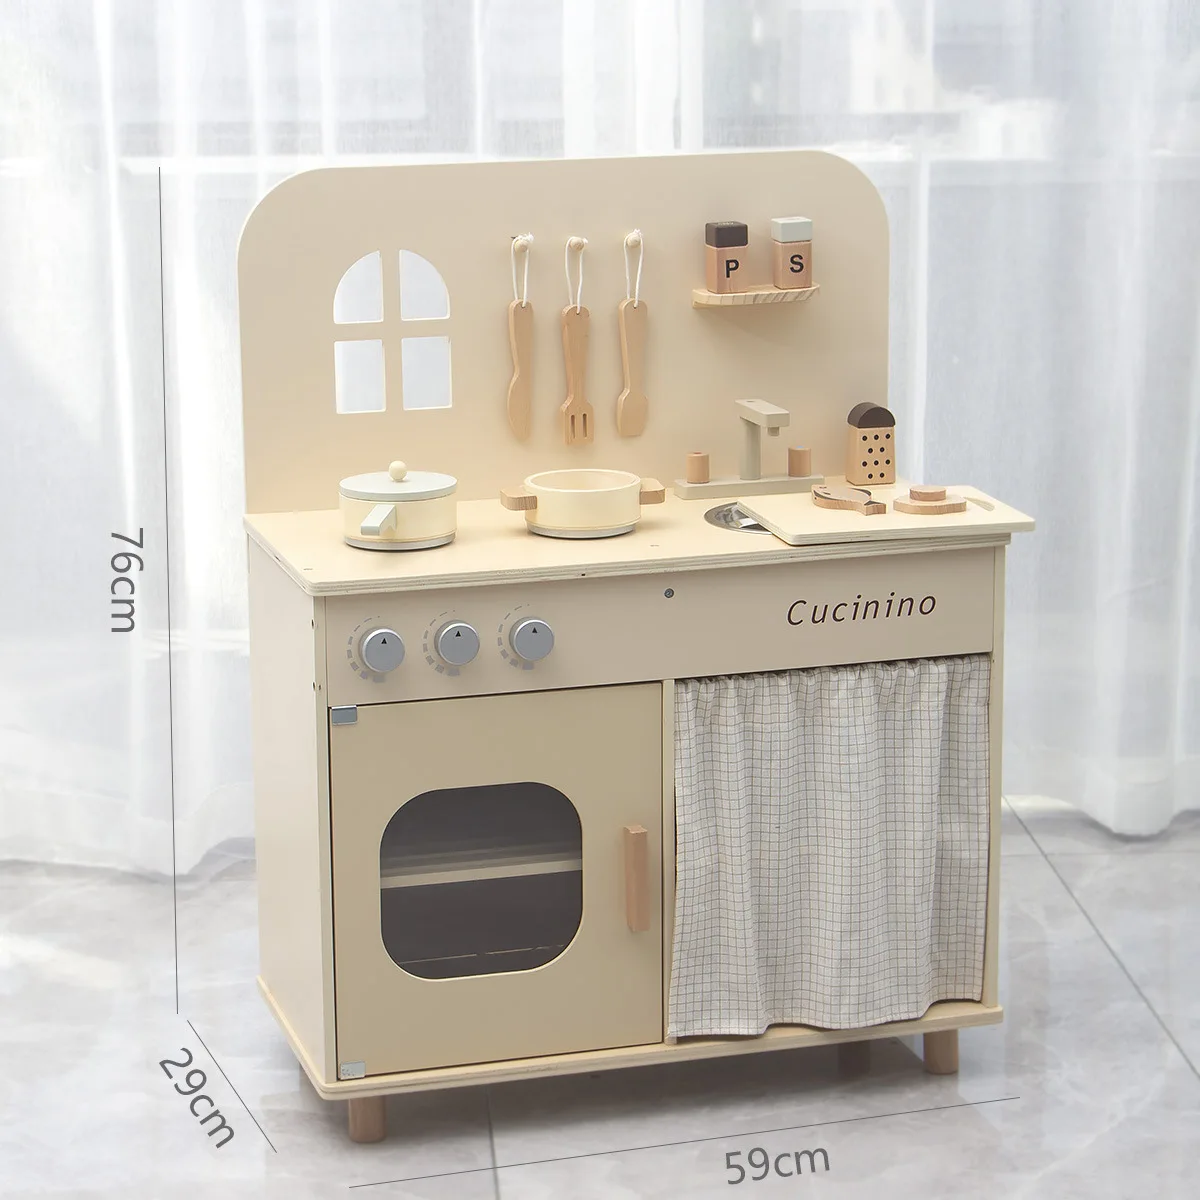 Refrigerador congelador de juguete de madera para bebés juguetes para niños  Cocina Playset bebé Gabinete refrigerador muebles juego de aparentar -  China Juguete de madera y cocina de madera precio